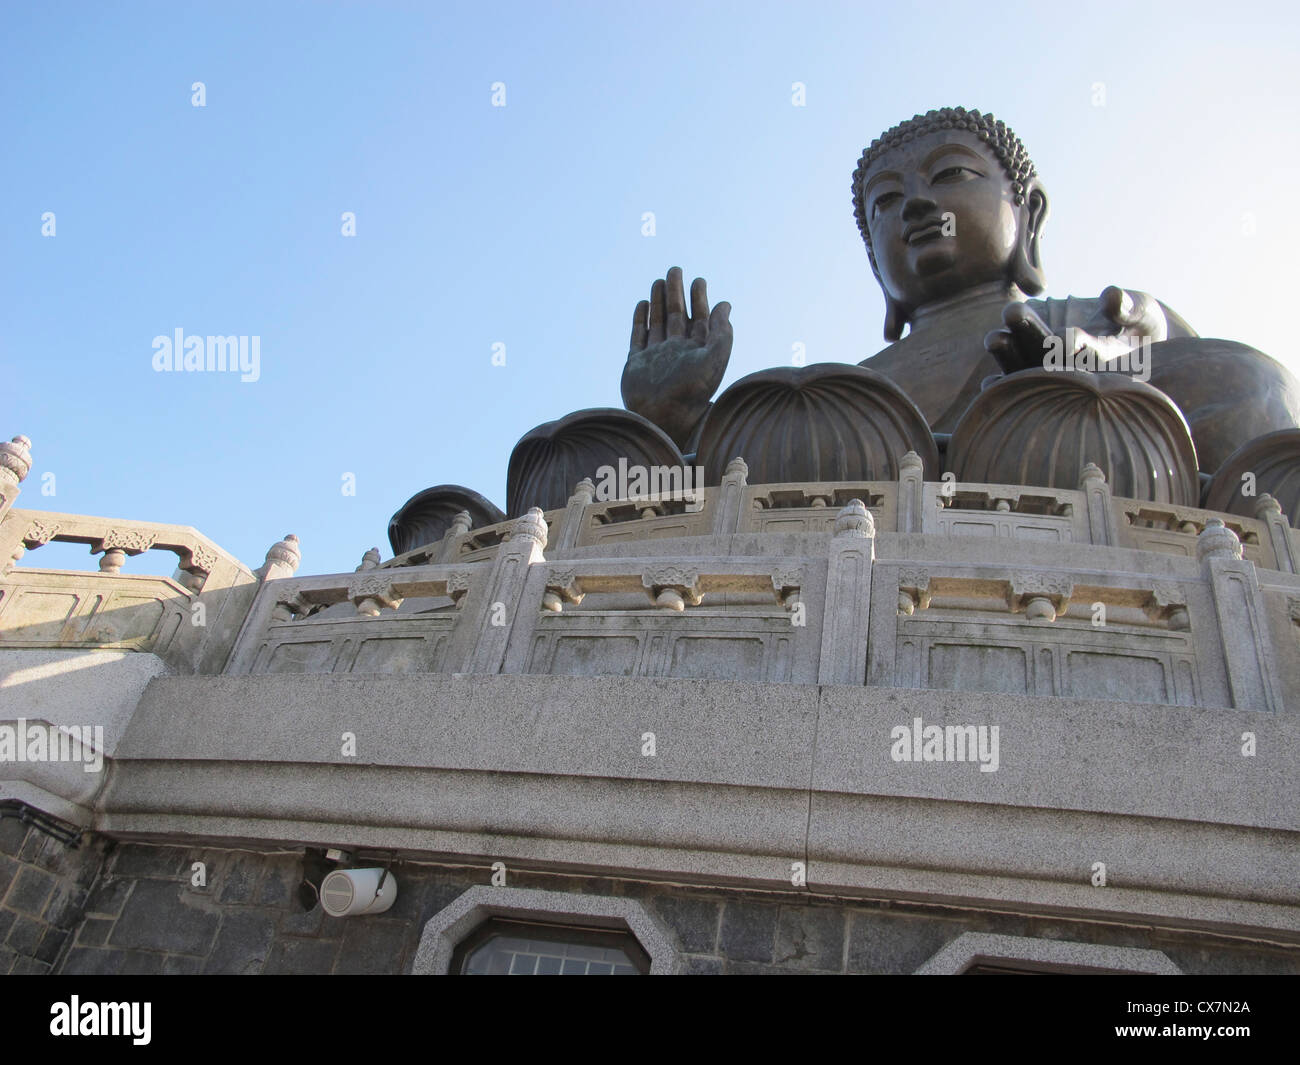 Tian Tan Buddha, or 'Big Buddha' located on Lantau Island in Hong Kong Stock Photo